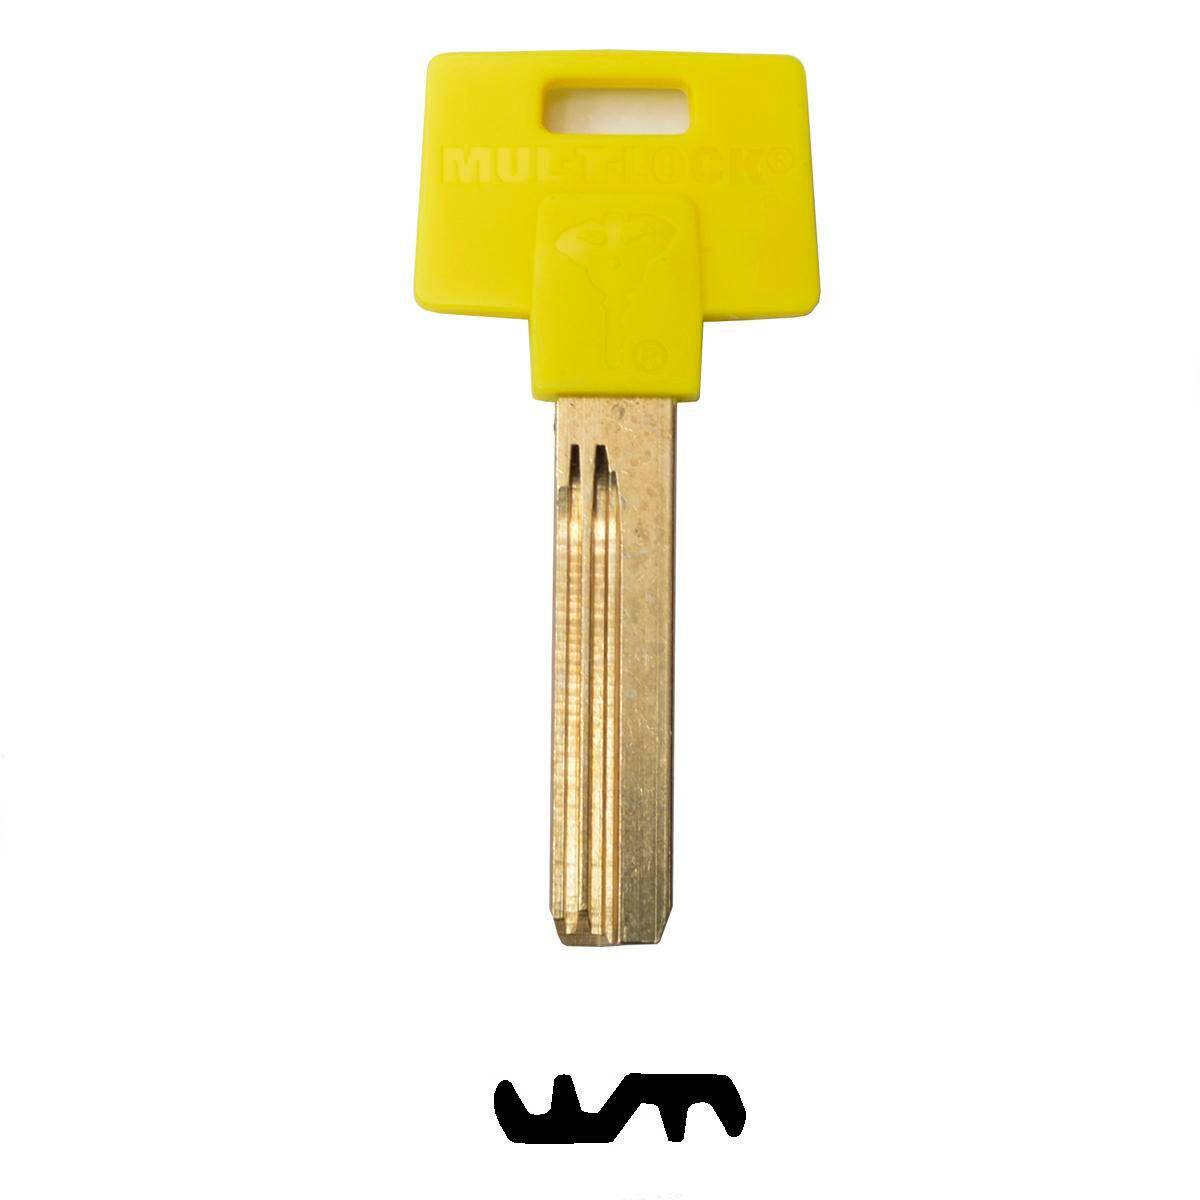 Key MUL-T-LOCK 062